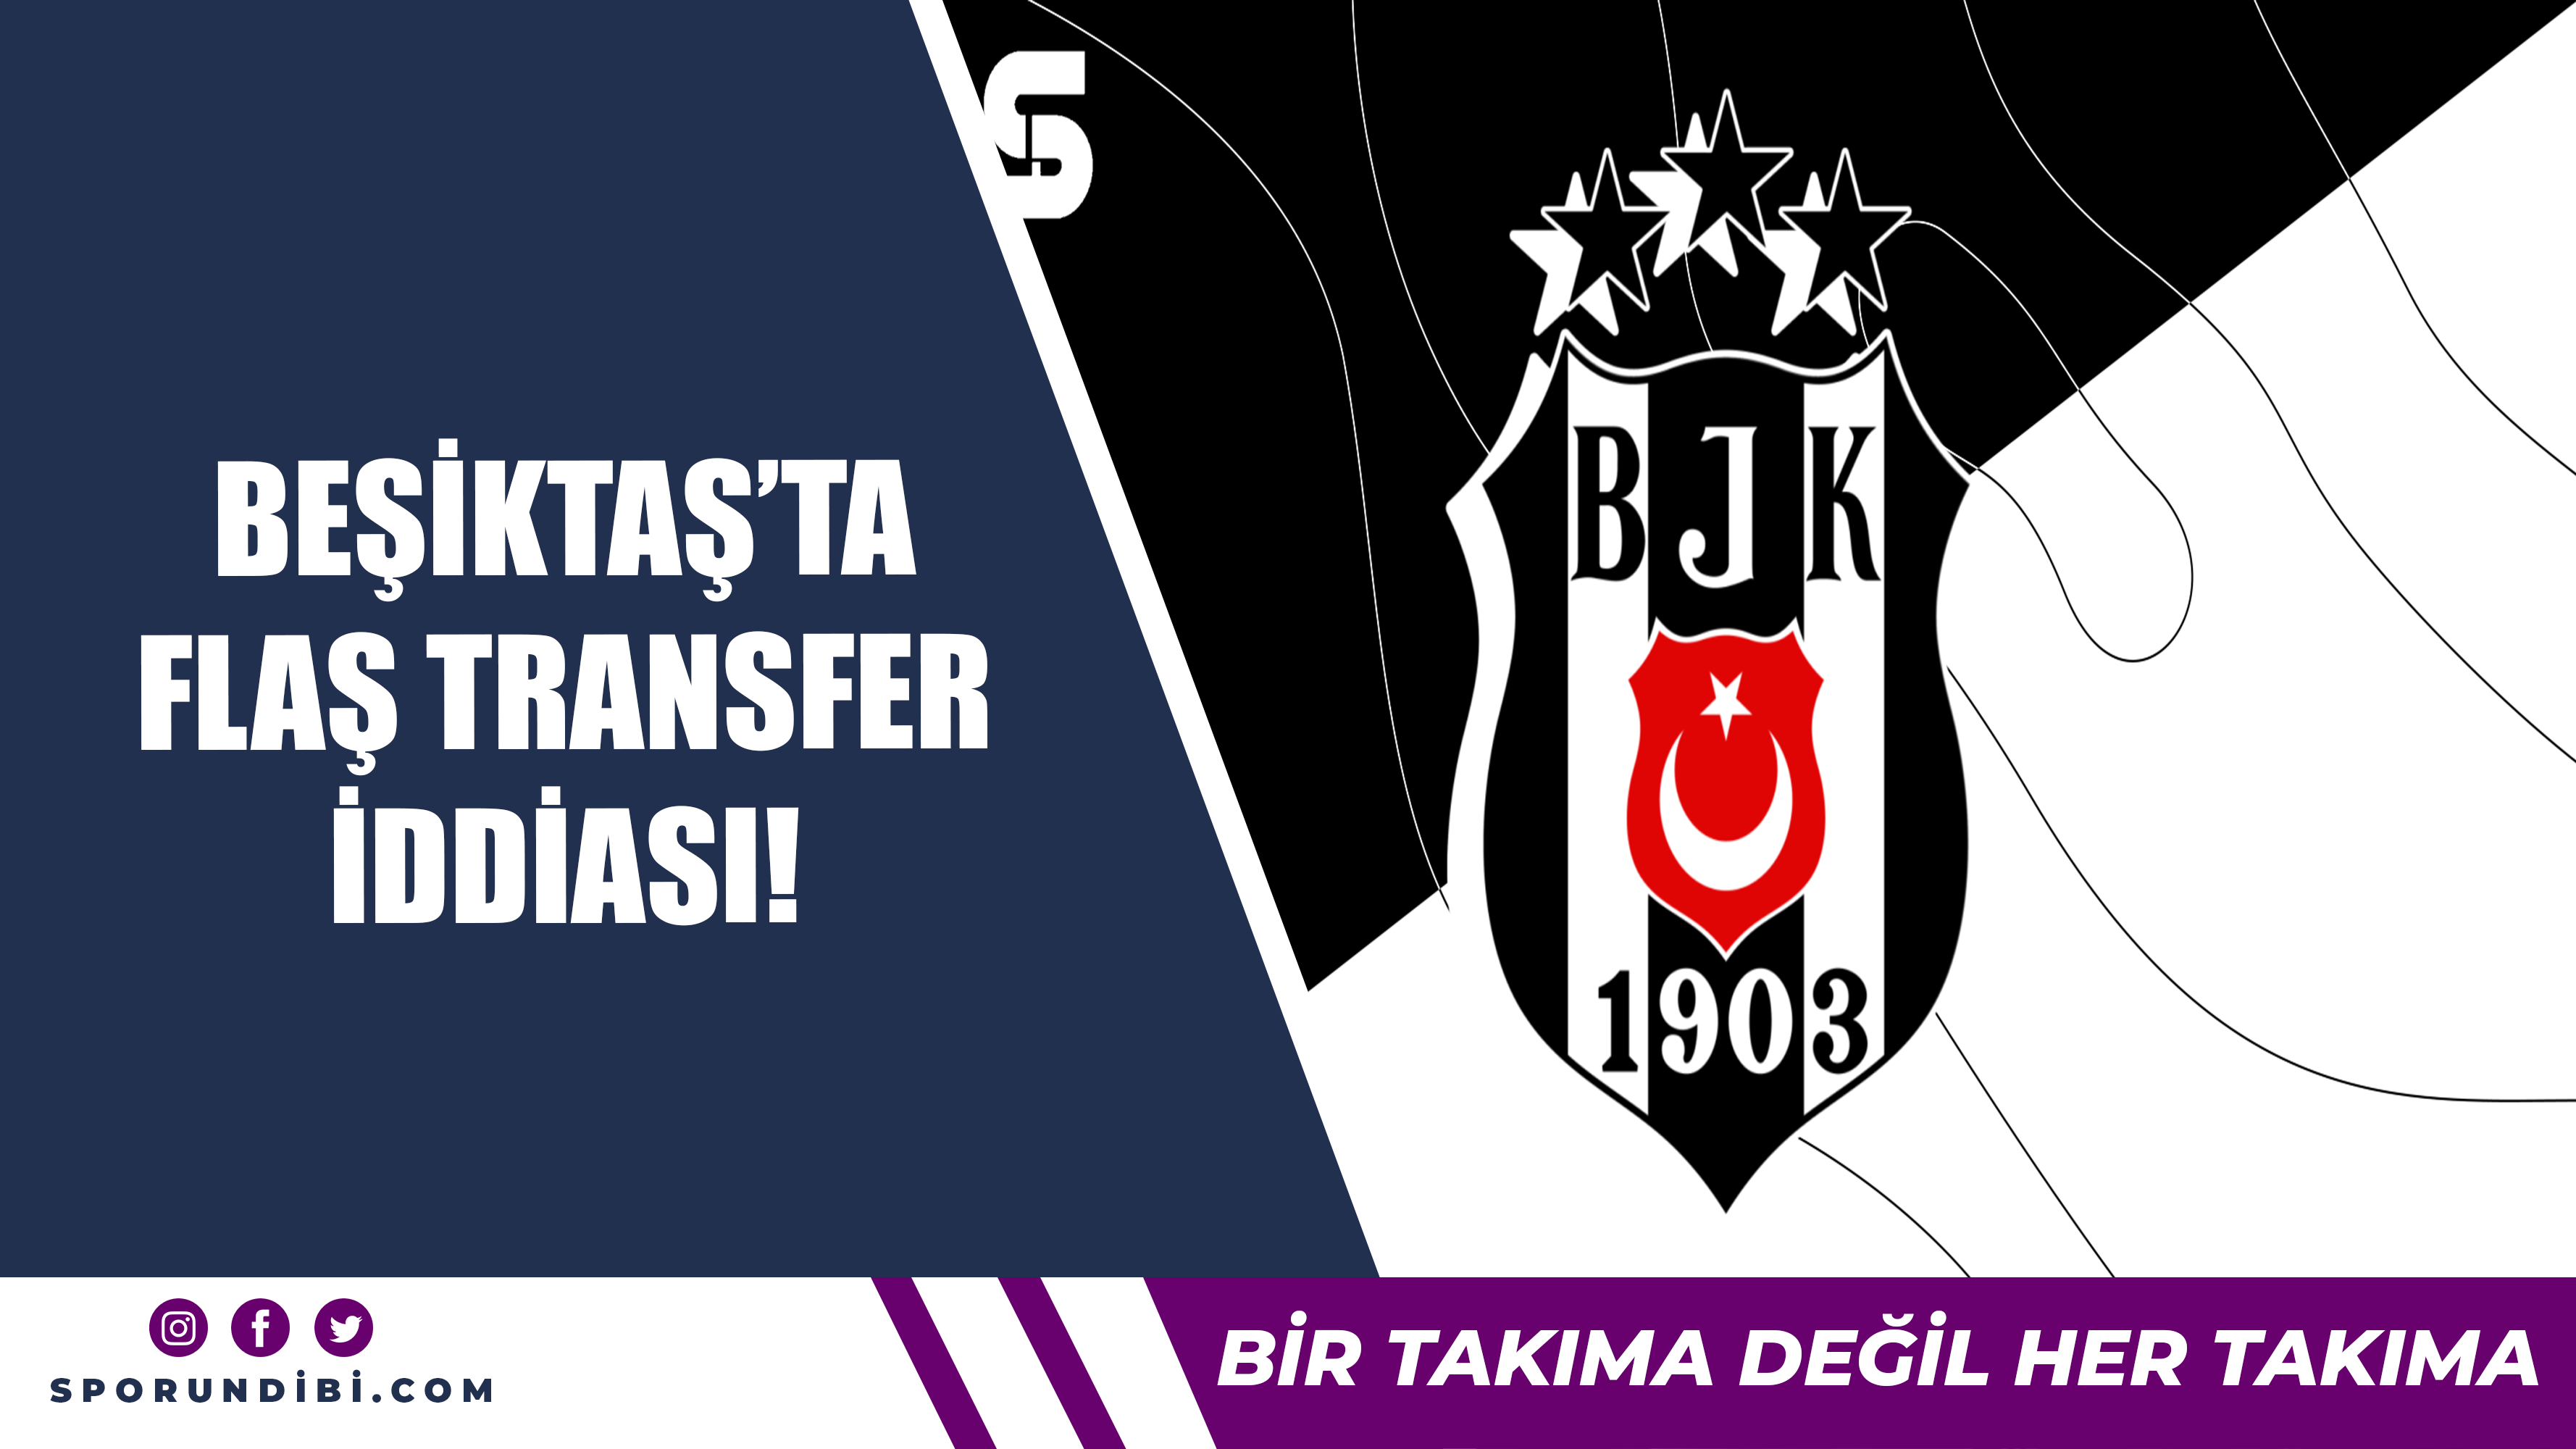 Beşiktaş'ta flaş transfer iddiası!